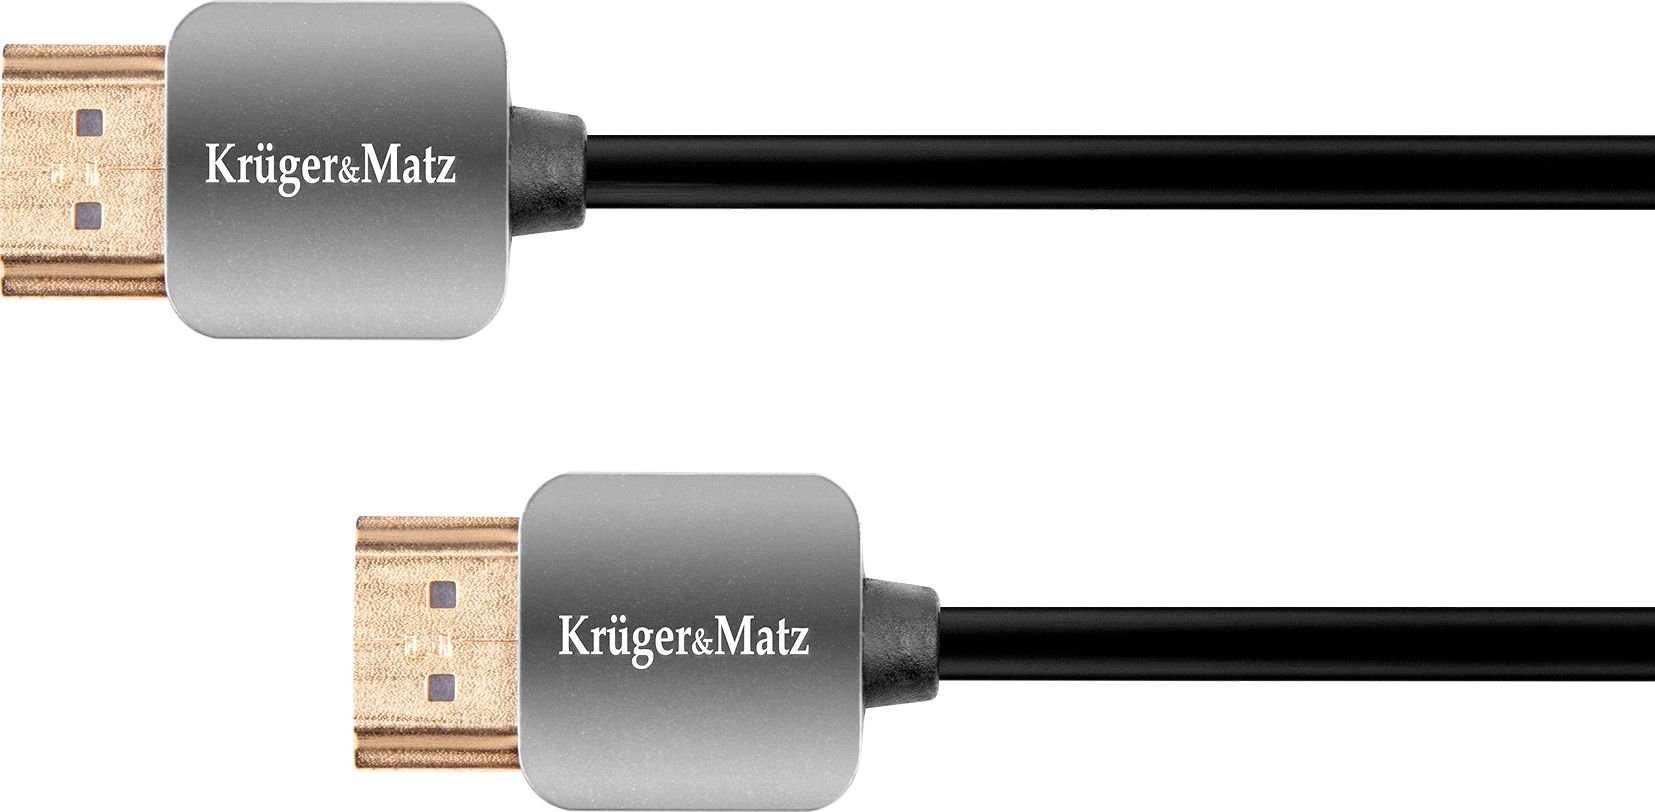 Kruger&Matz HDMI - cablu HDMI 1,8 m negru (KM0329)